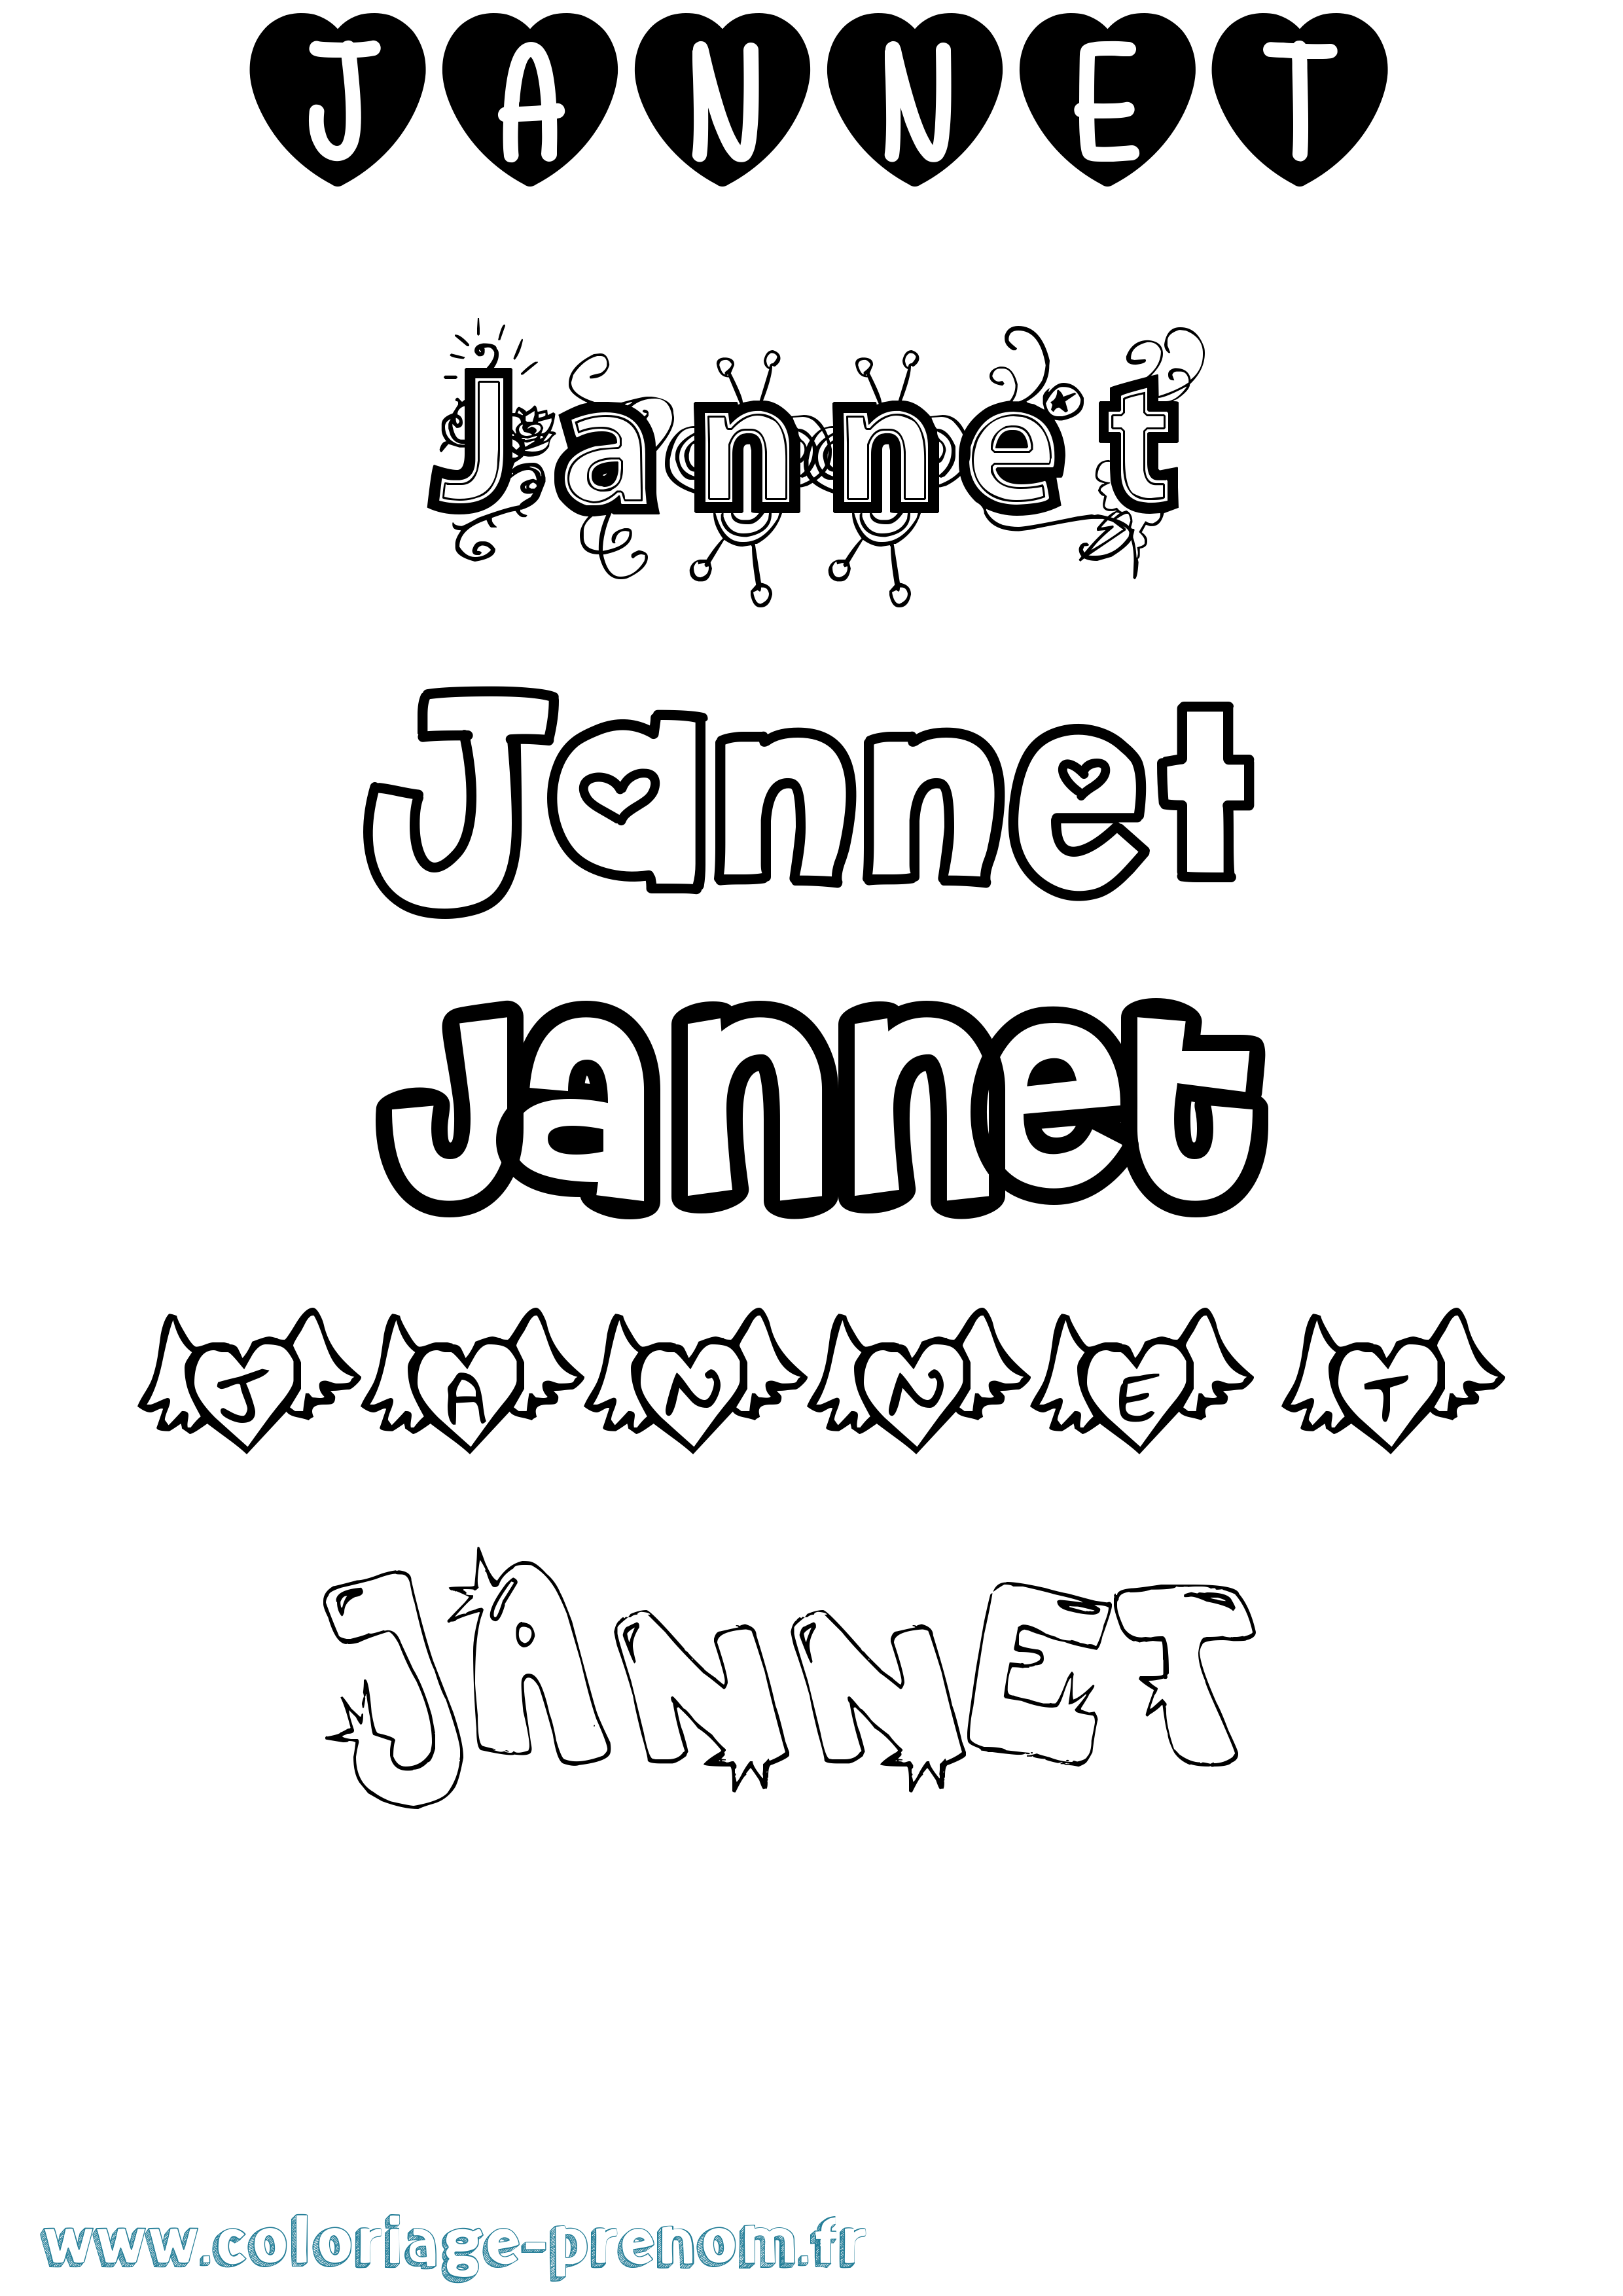 Coloriage du prénom Jannet : à Imprimer ou Télécharger facilement